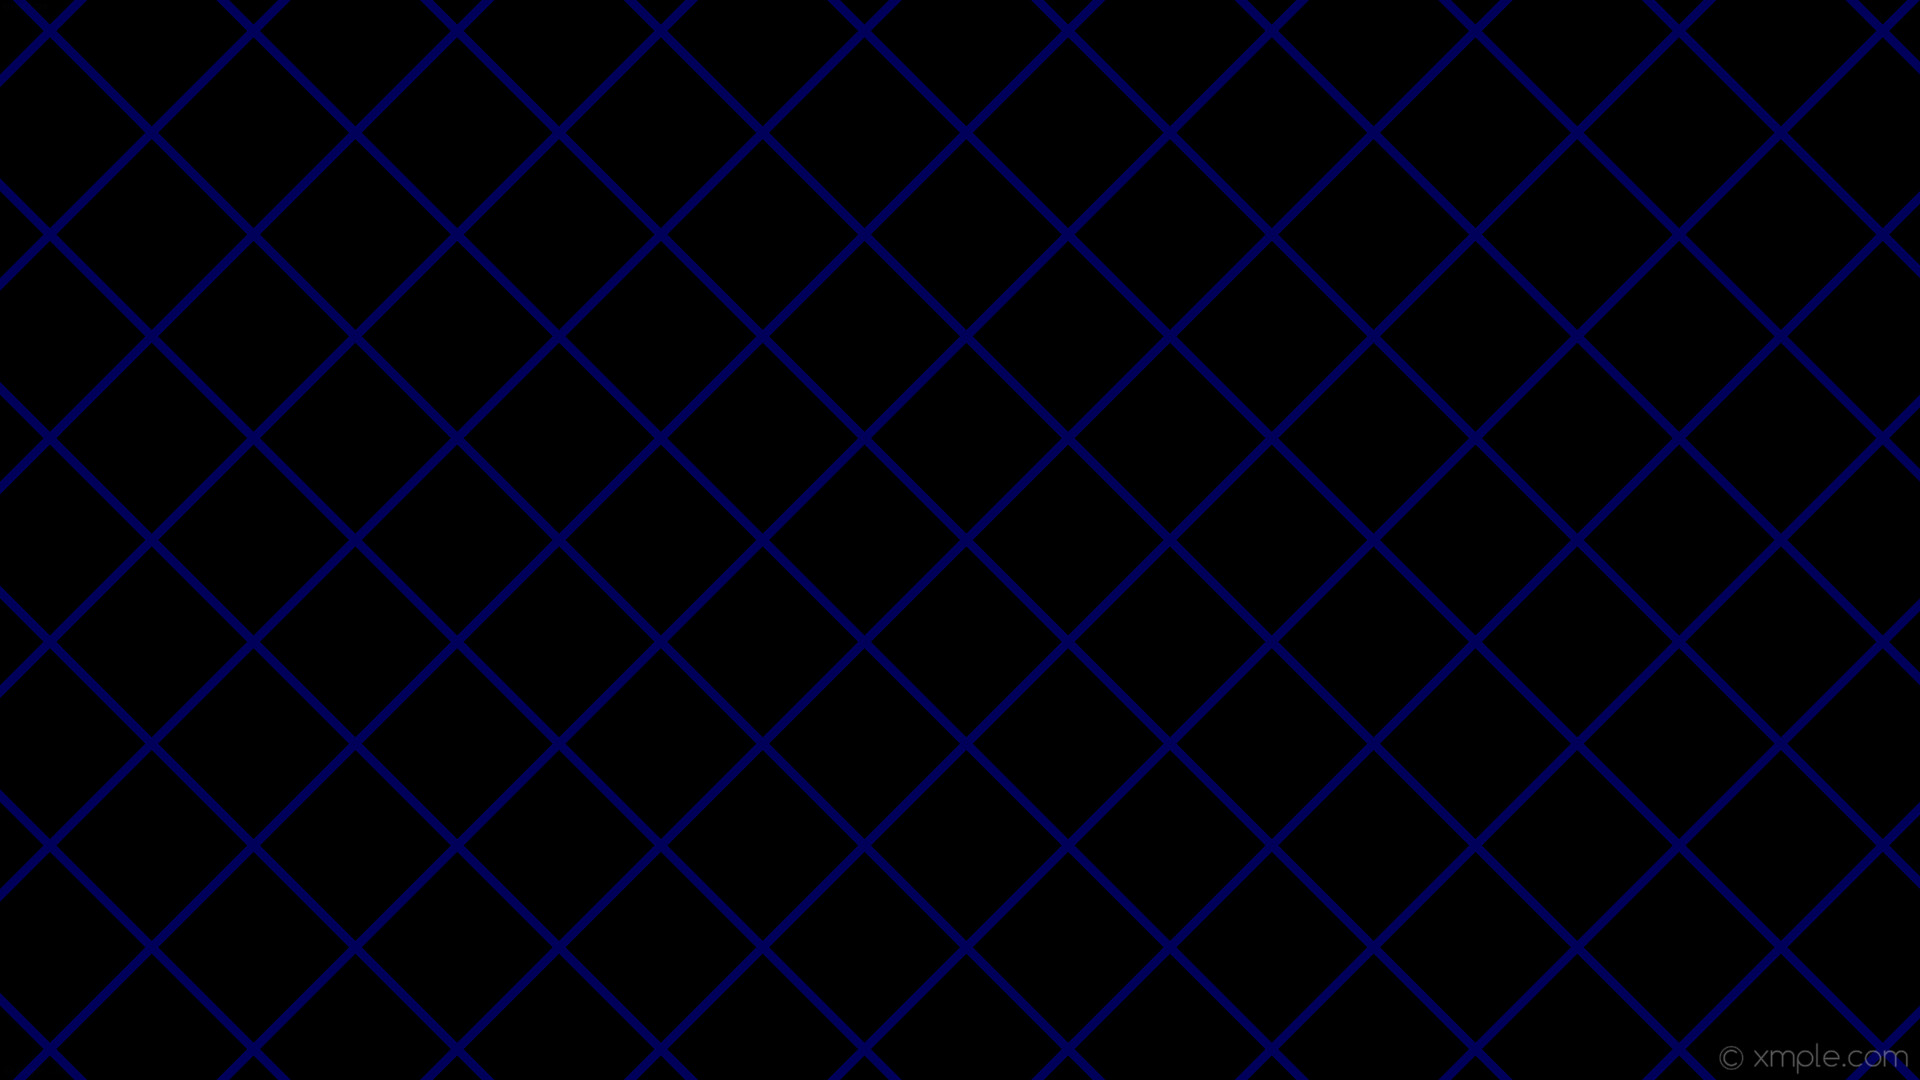 wallpaper graph paper blue black grid navy #000000 #000080 45Â° 9px 144px